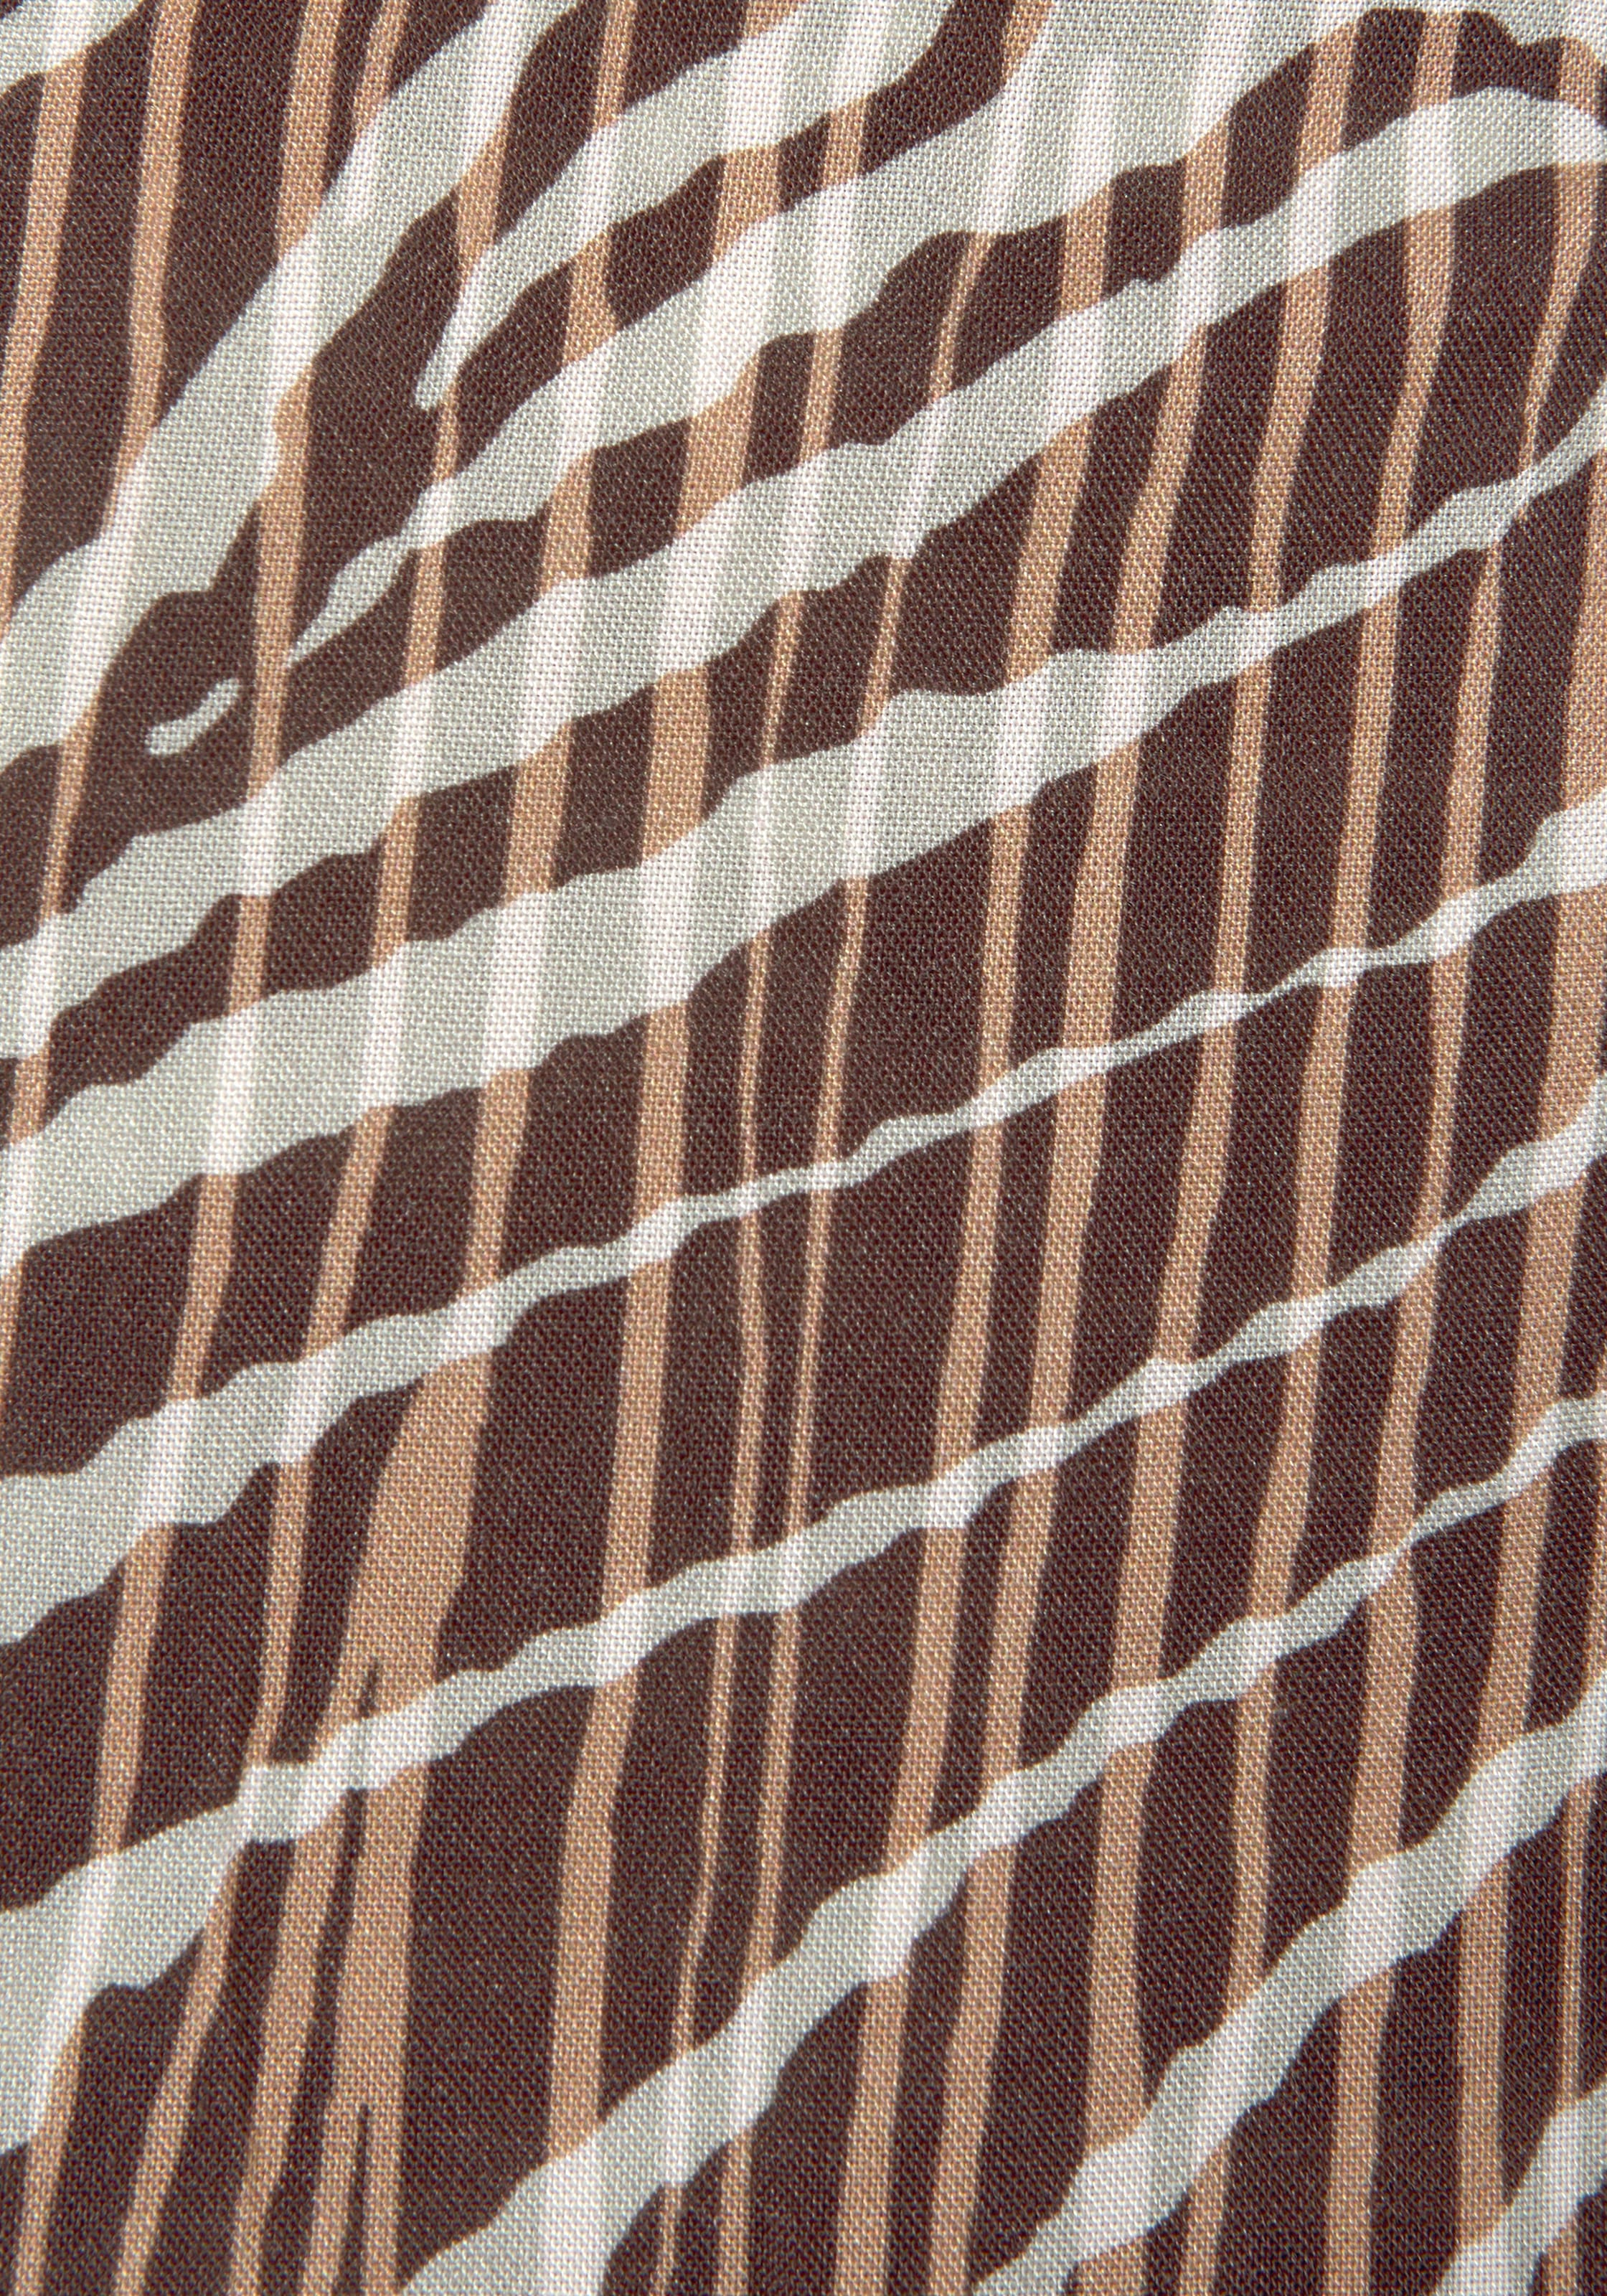 LASCANA Wickelkleid, mit Alloverdruck, kurzes Sommerkleid im Animalprint, Strandkleid